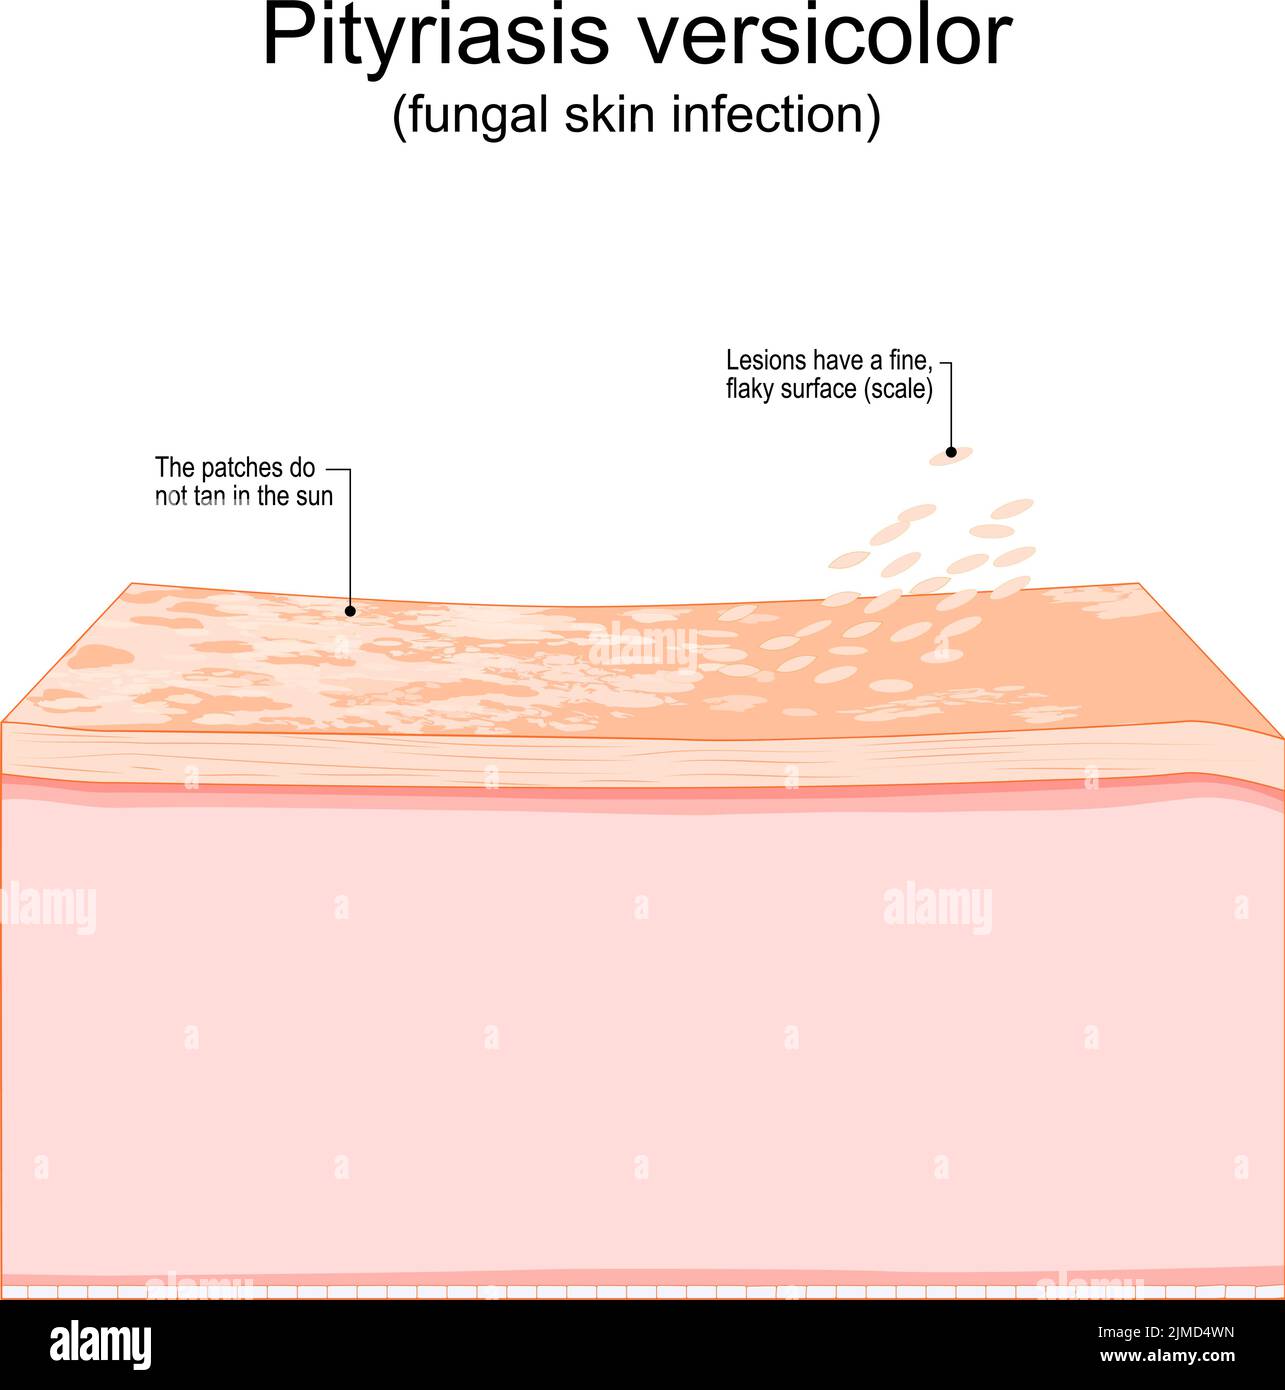 Pityriasis versicolor. Pilzinfektion der Haut. Querschnitt einer menschlichen Haut mit Flecken, die nicht in der Sonne bräunen und Läsionen, die eine feine haben Stock Vektor